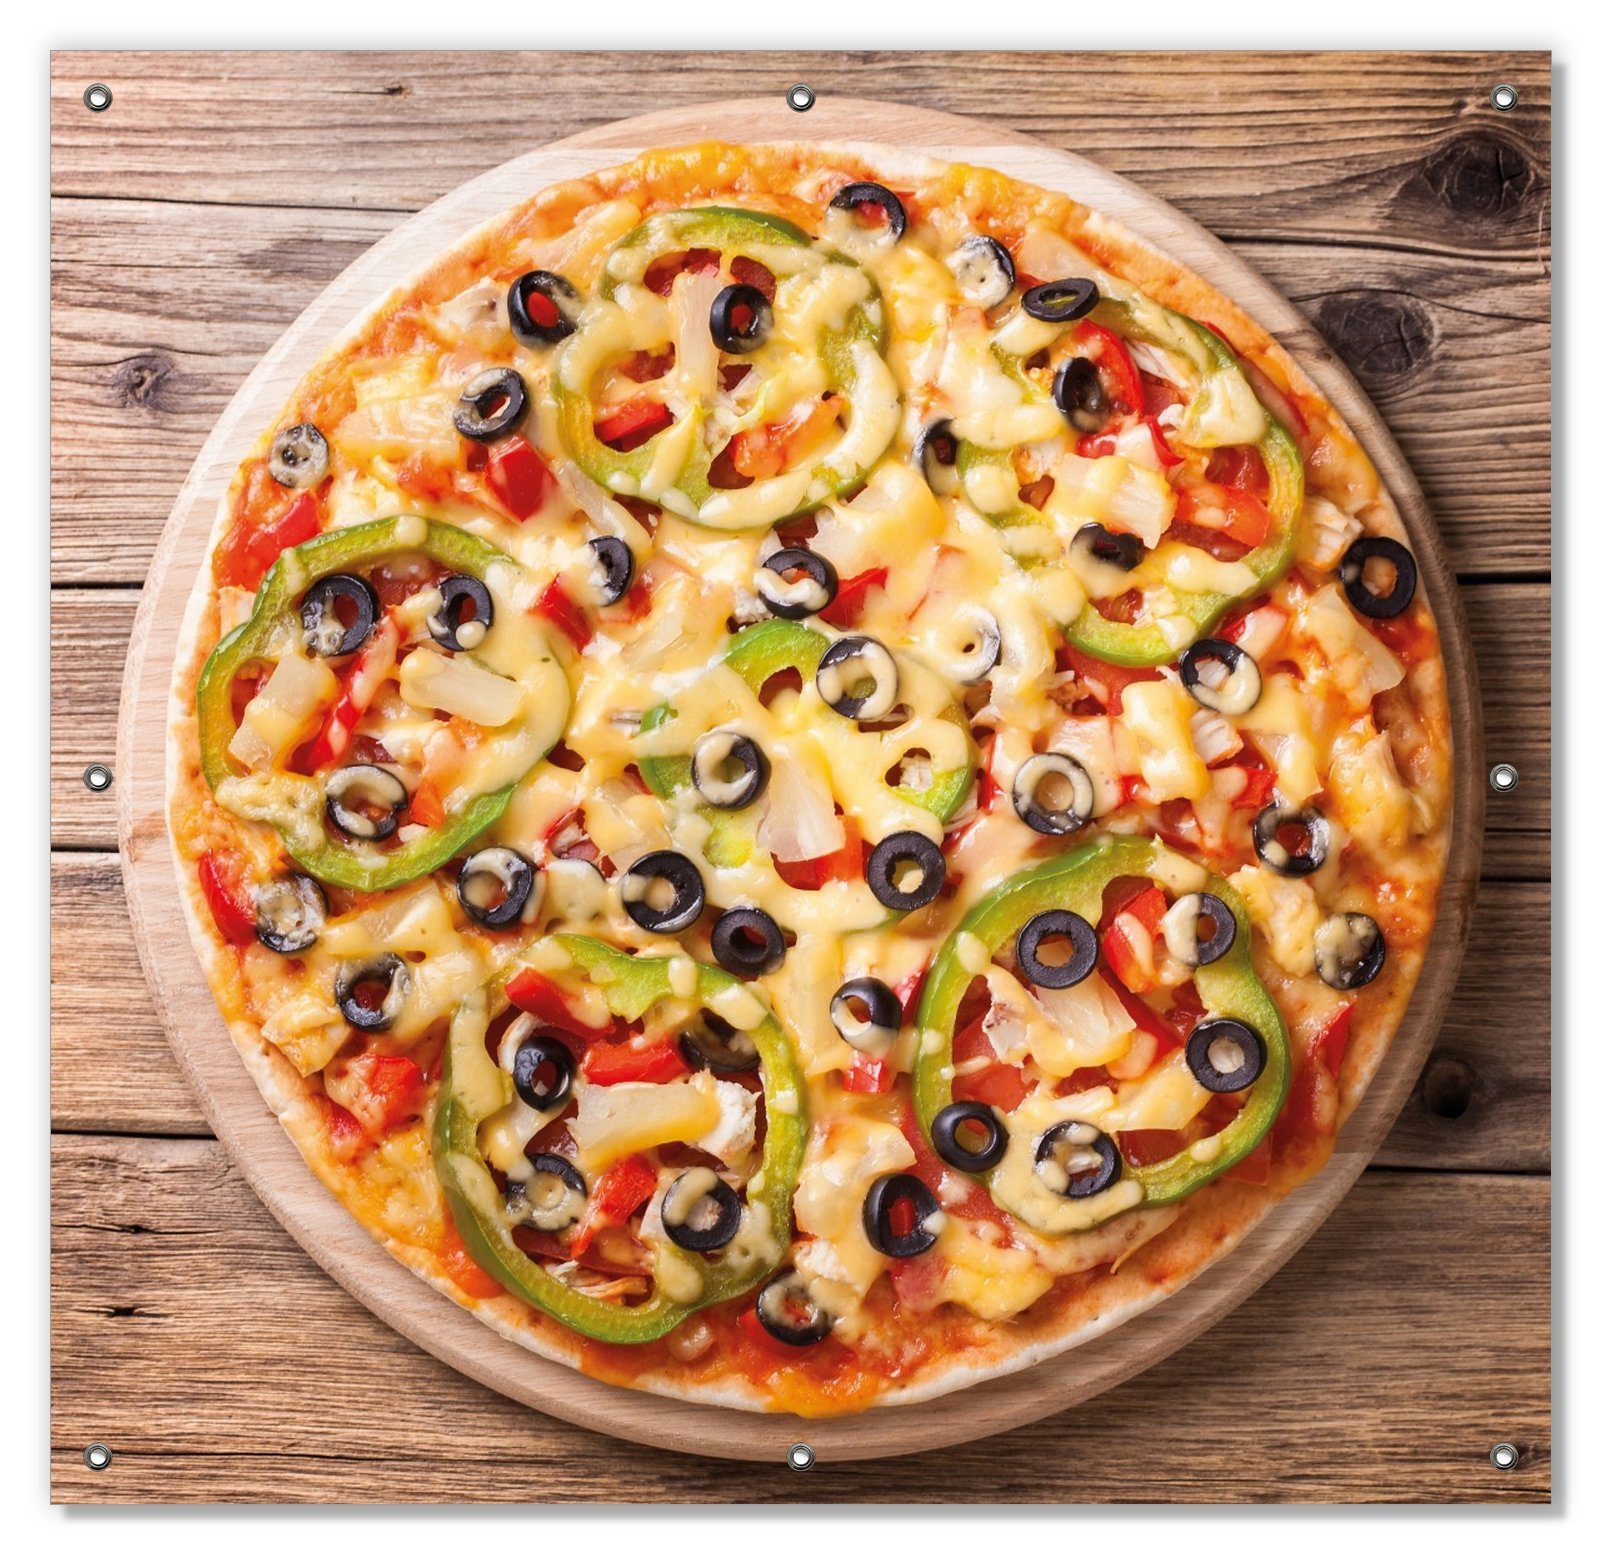 Sonnenschutz und wiederverwendbar blickdicht, mit Peperoni, Italienische mit Oliven. Saugnäpfen, und Paprika Pizza wiederablösbar Käse, Wallario,